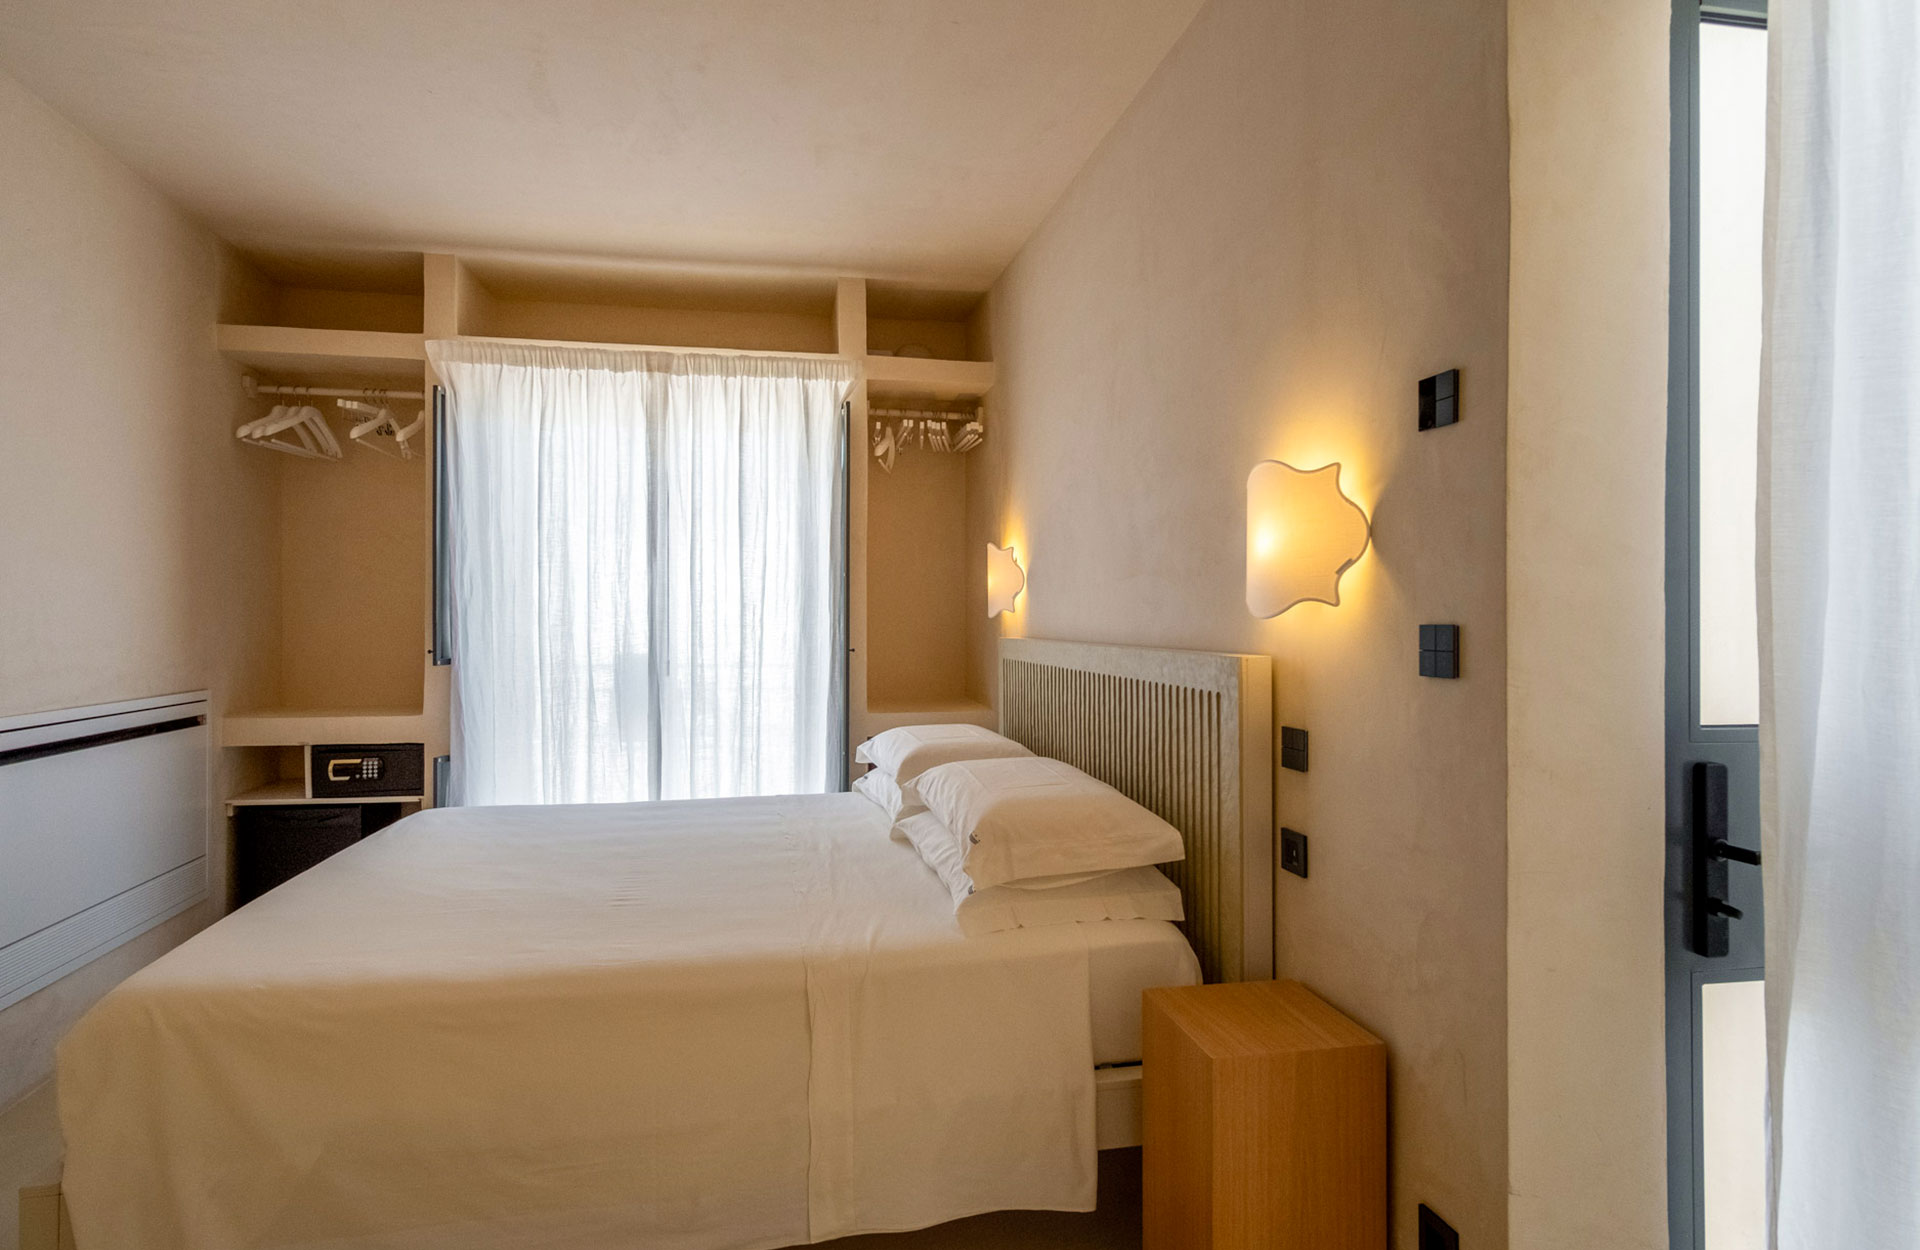 dimora salentina salento italy rooms holidays spongano hotel b&b hospitality tre bacili